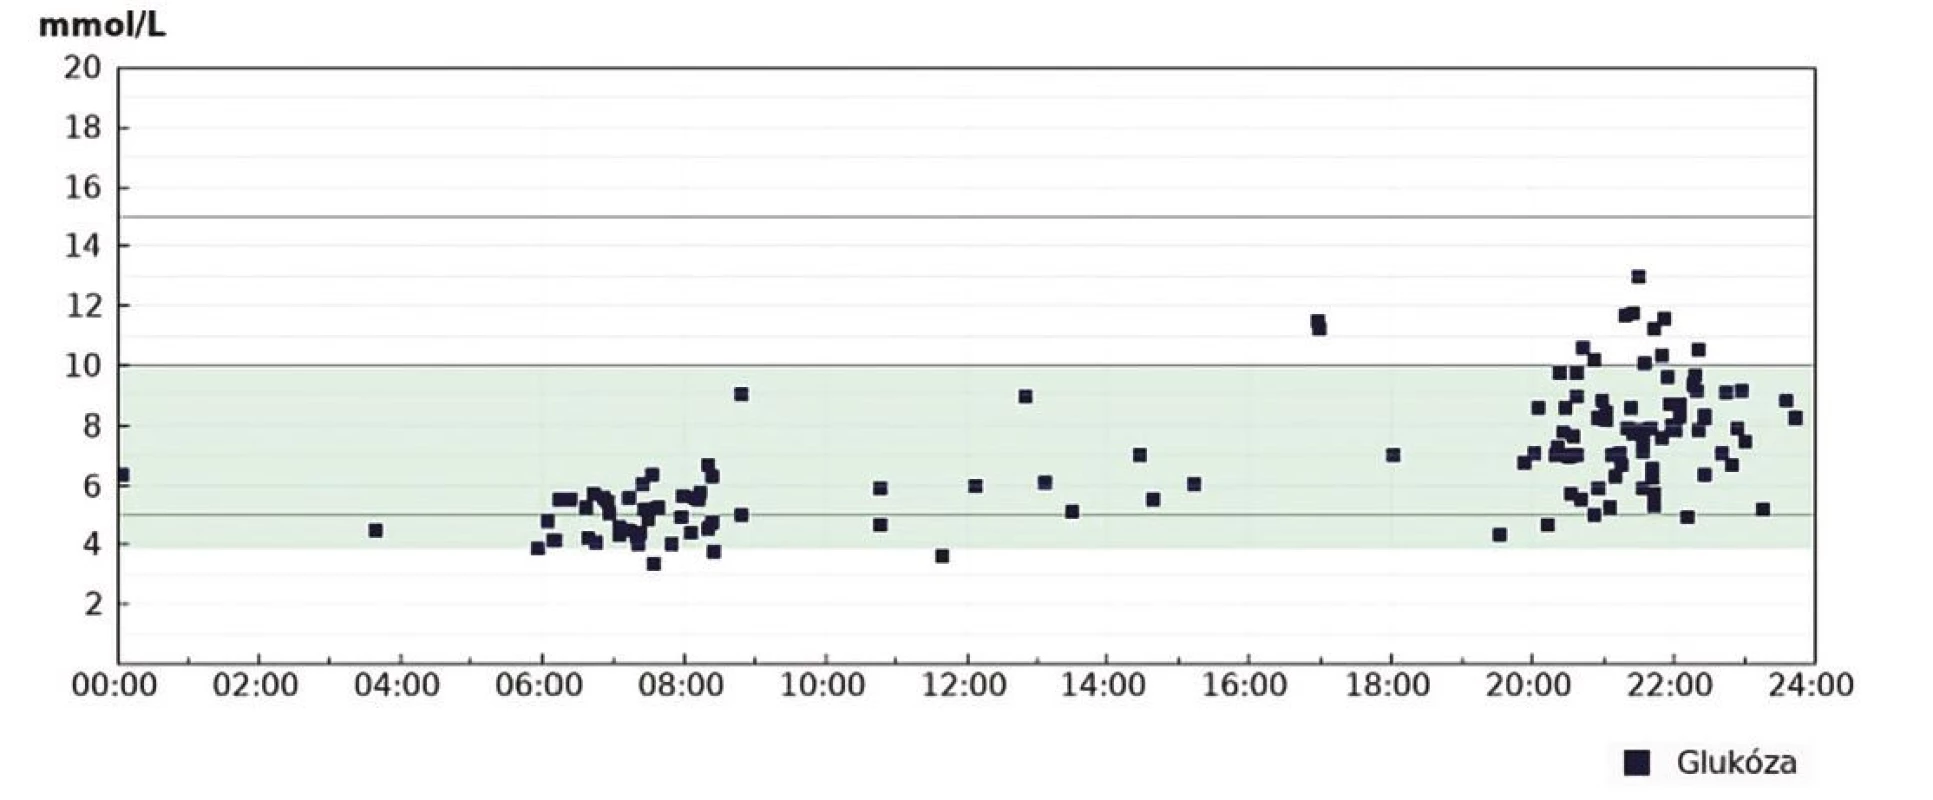 Srovnání hodnocení TIR kalkulovaného z glukometru a profesionální zaslepené CGM u pacientky s DM léčené intenzifikovaným inzulinovým
režimem. Vyjádření „in range“ parametrů kalkulovaných z měření glukometrem je klinicky významně zkresleno chybějícími záznamy měření. Záznam CGM
odhaluje zásadní problém – vysokou variabilitu ranní glykemie a zejména výskyt nočních hypoglykemií<br>
Obr. 5A. Points in range z glukometru. Záznam tzv. modálního dne (Diasend) z období 1 měsíce před kontrolou